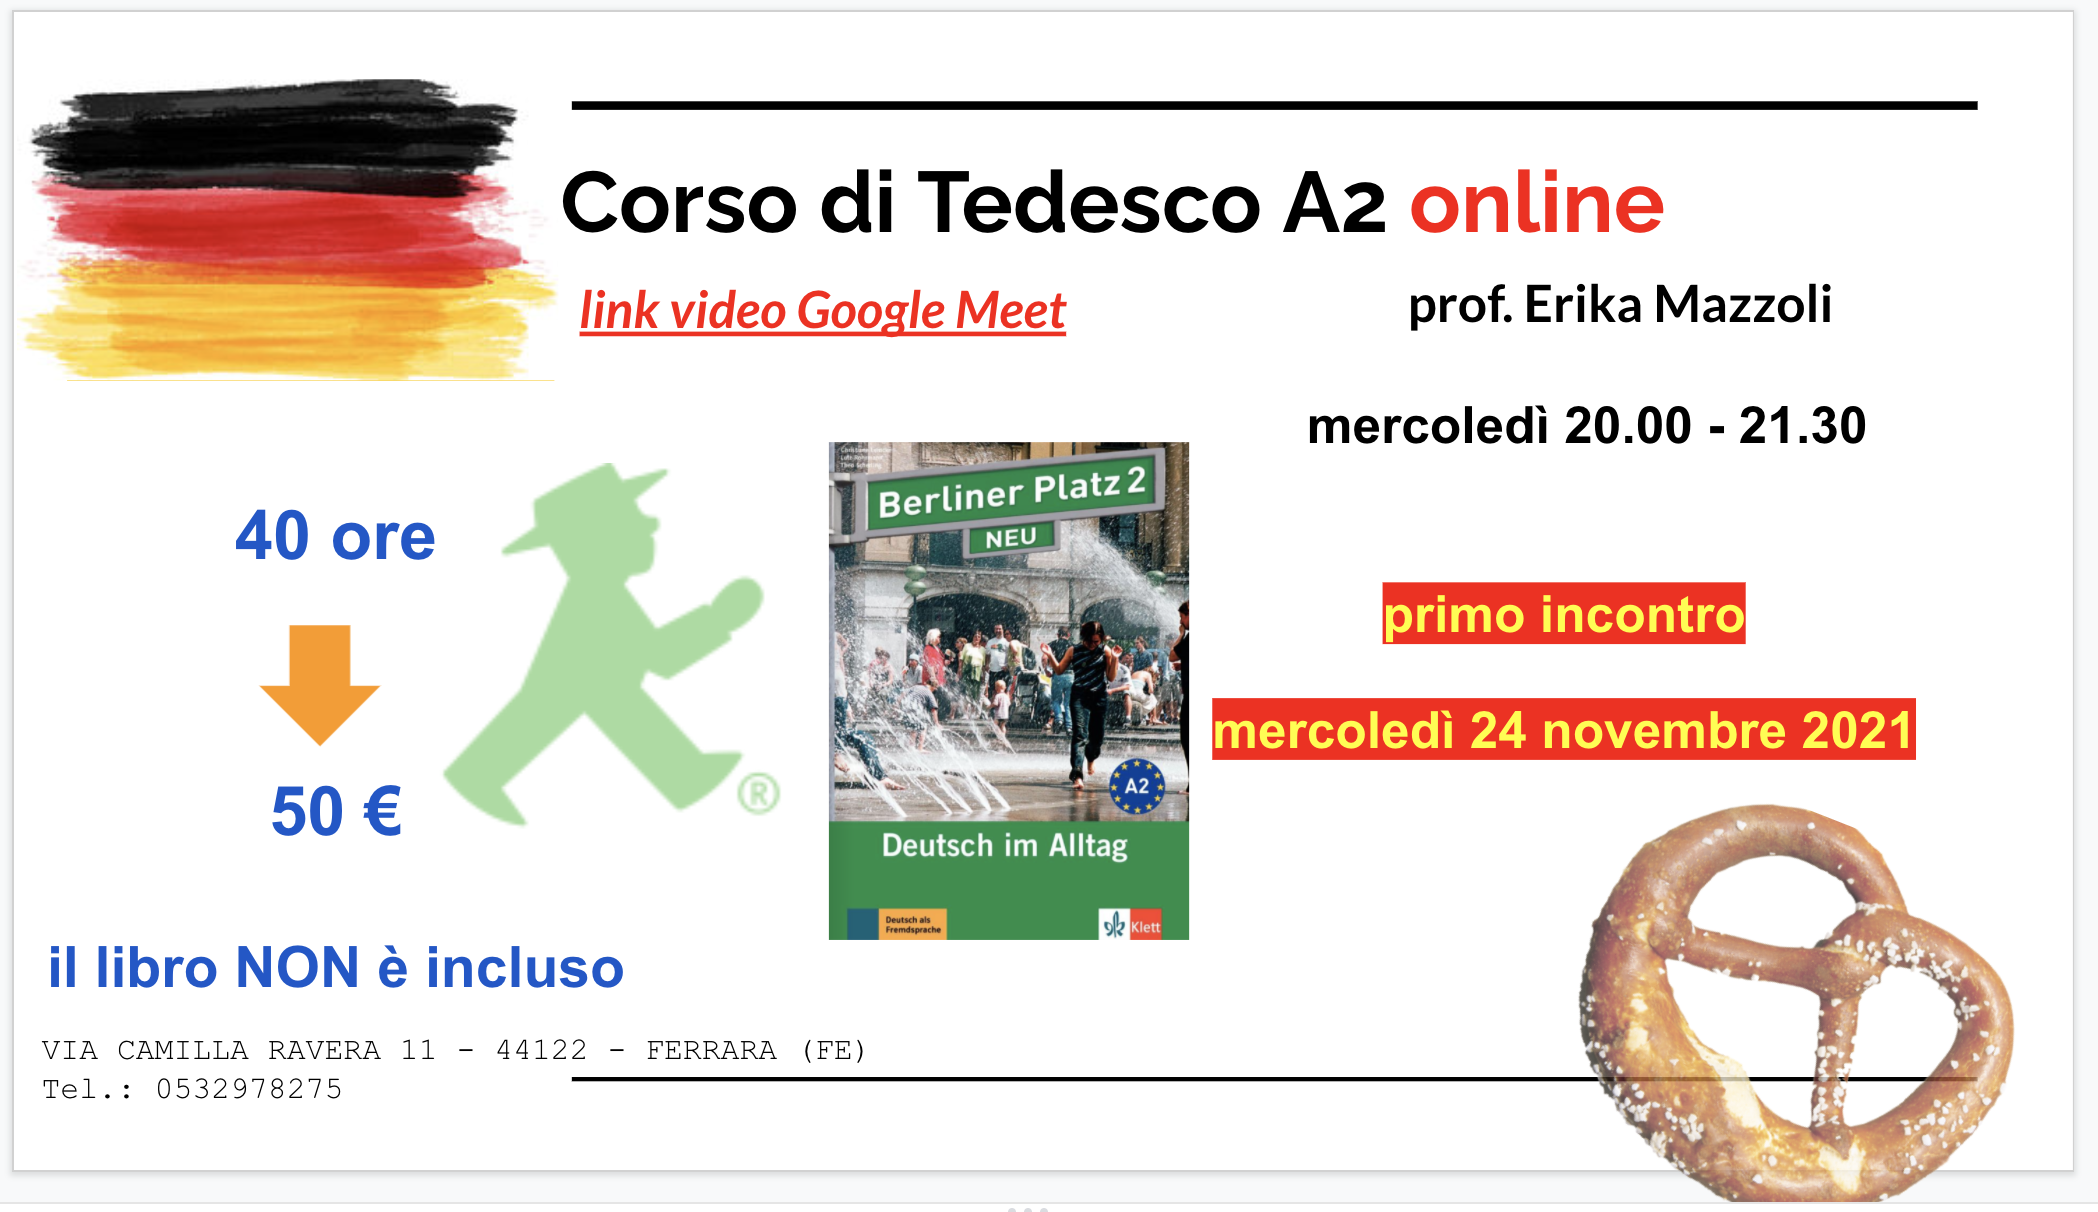 CORSO DI TEDESCO A2 ONLINE